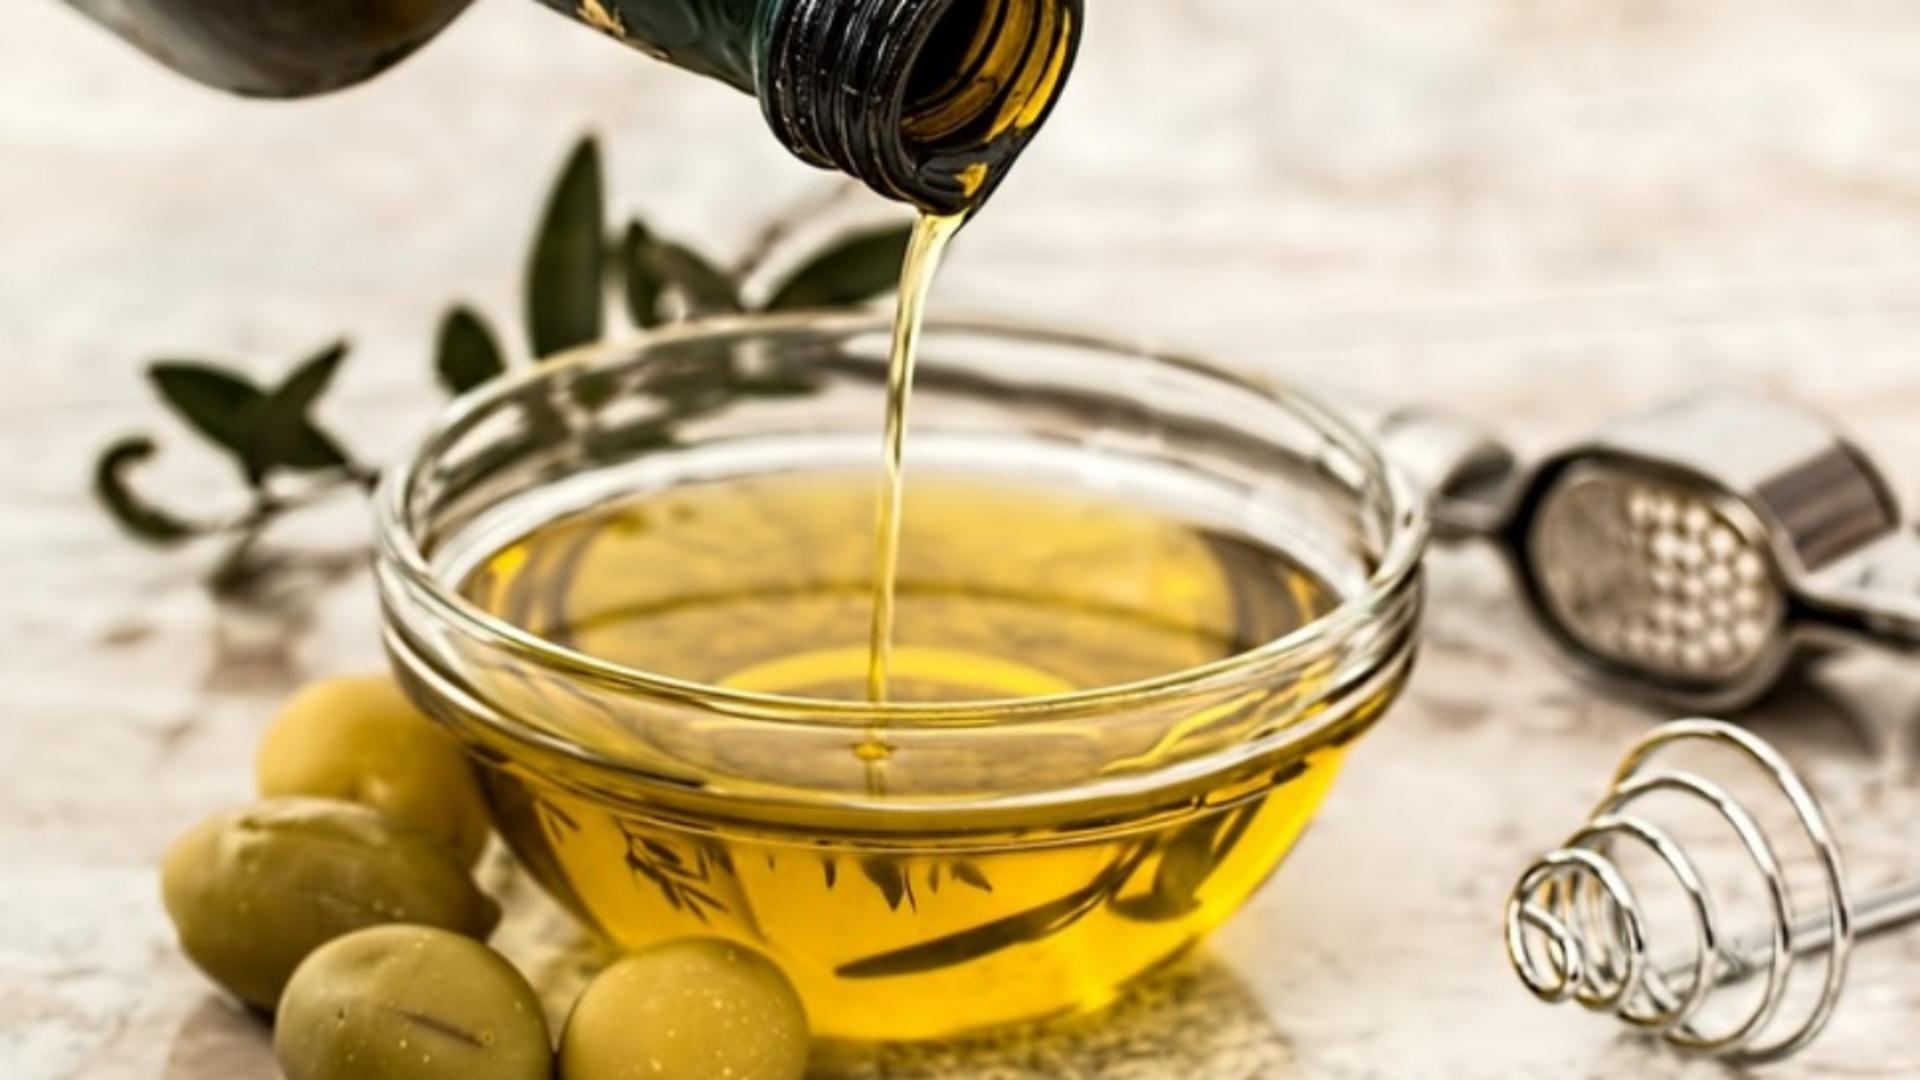 Când devine uleiul de măsline toxic?